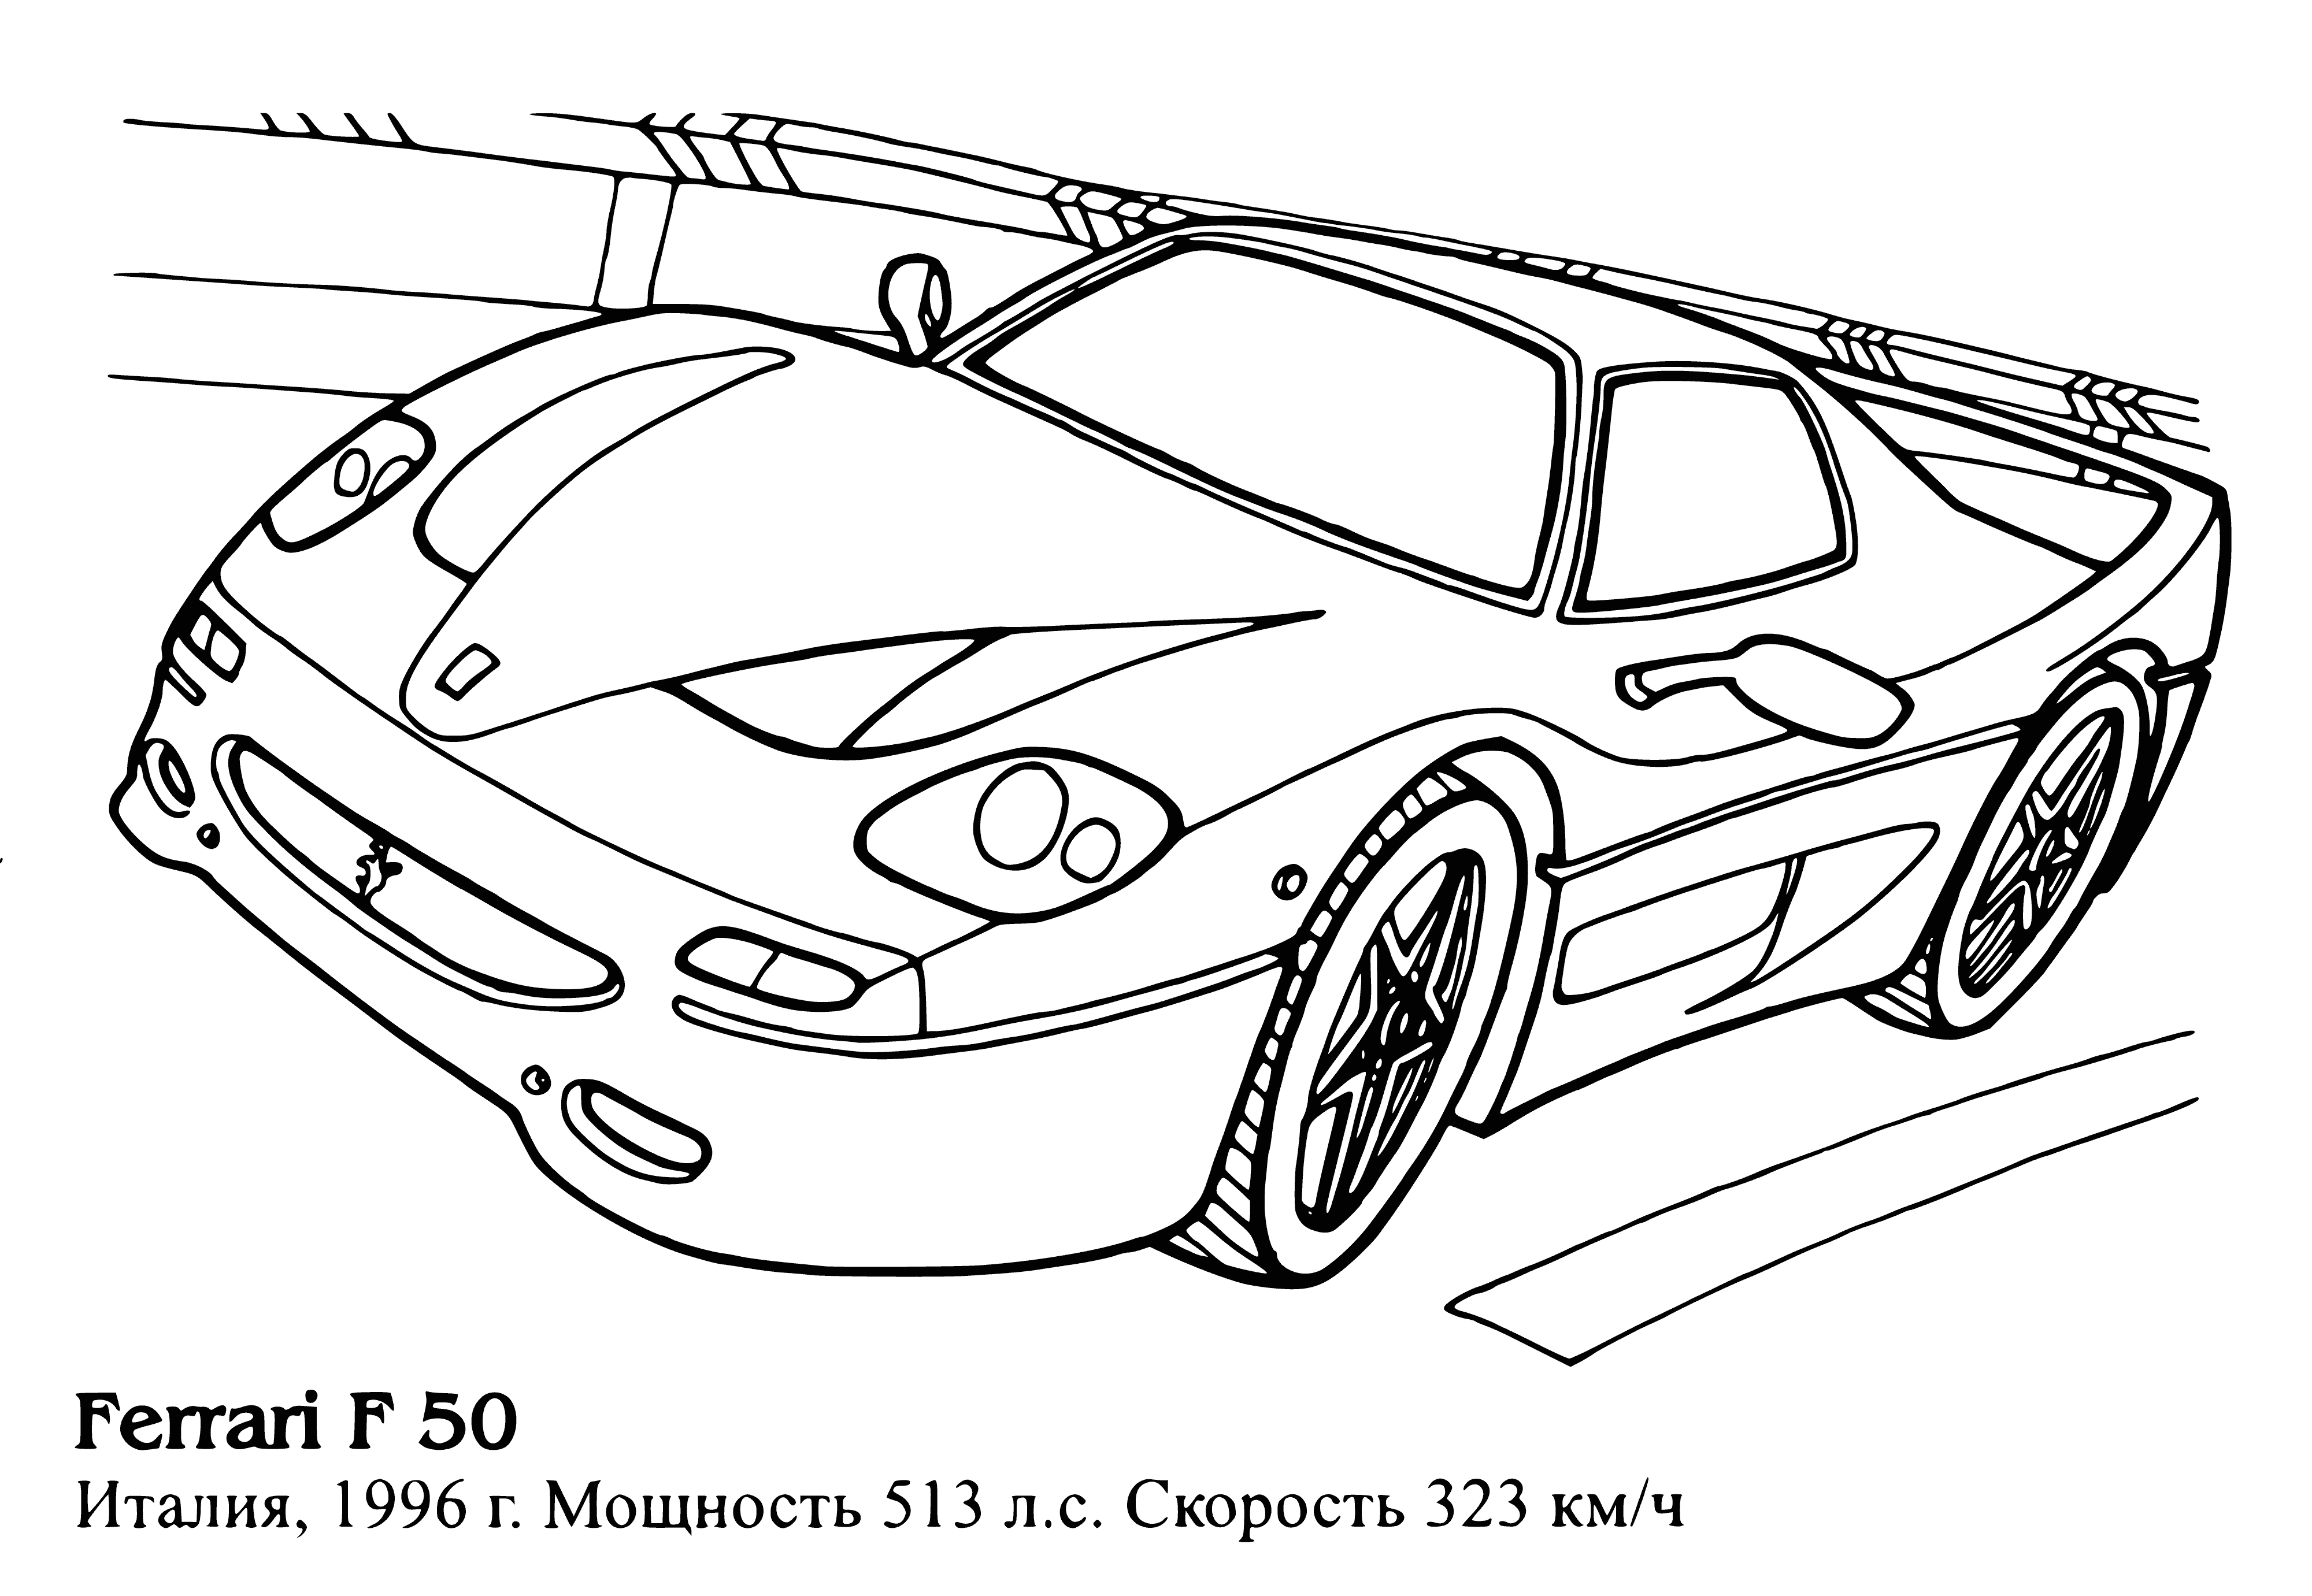 Ferrari F50 boyama sayfası